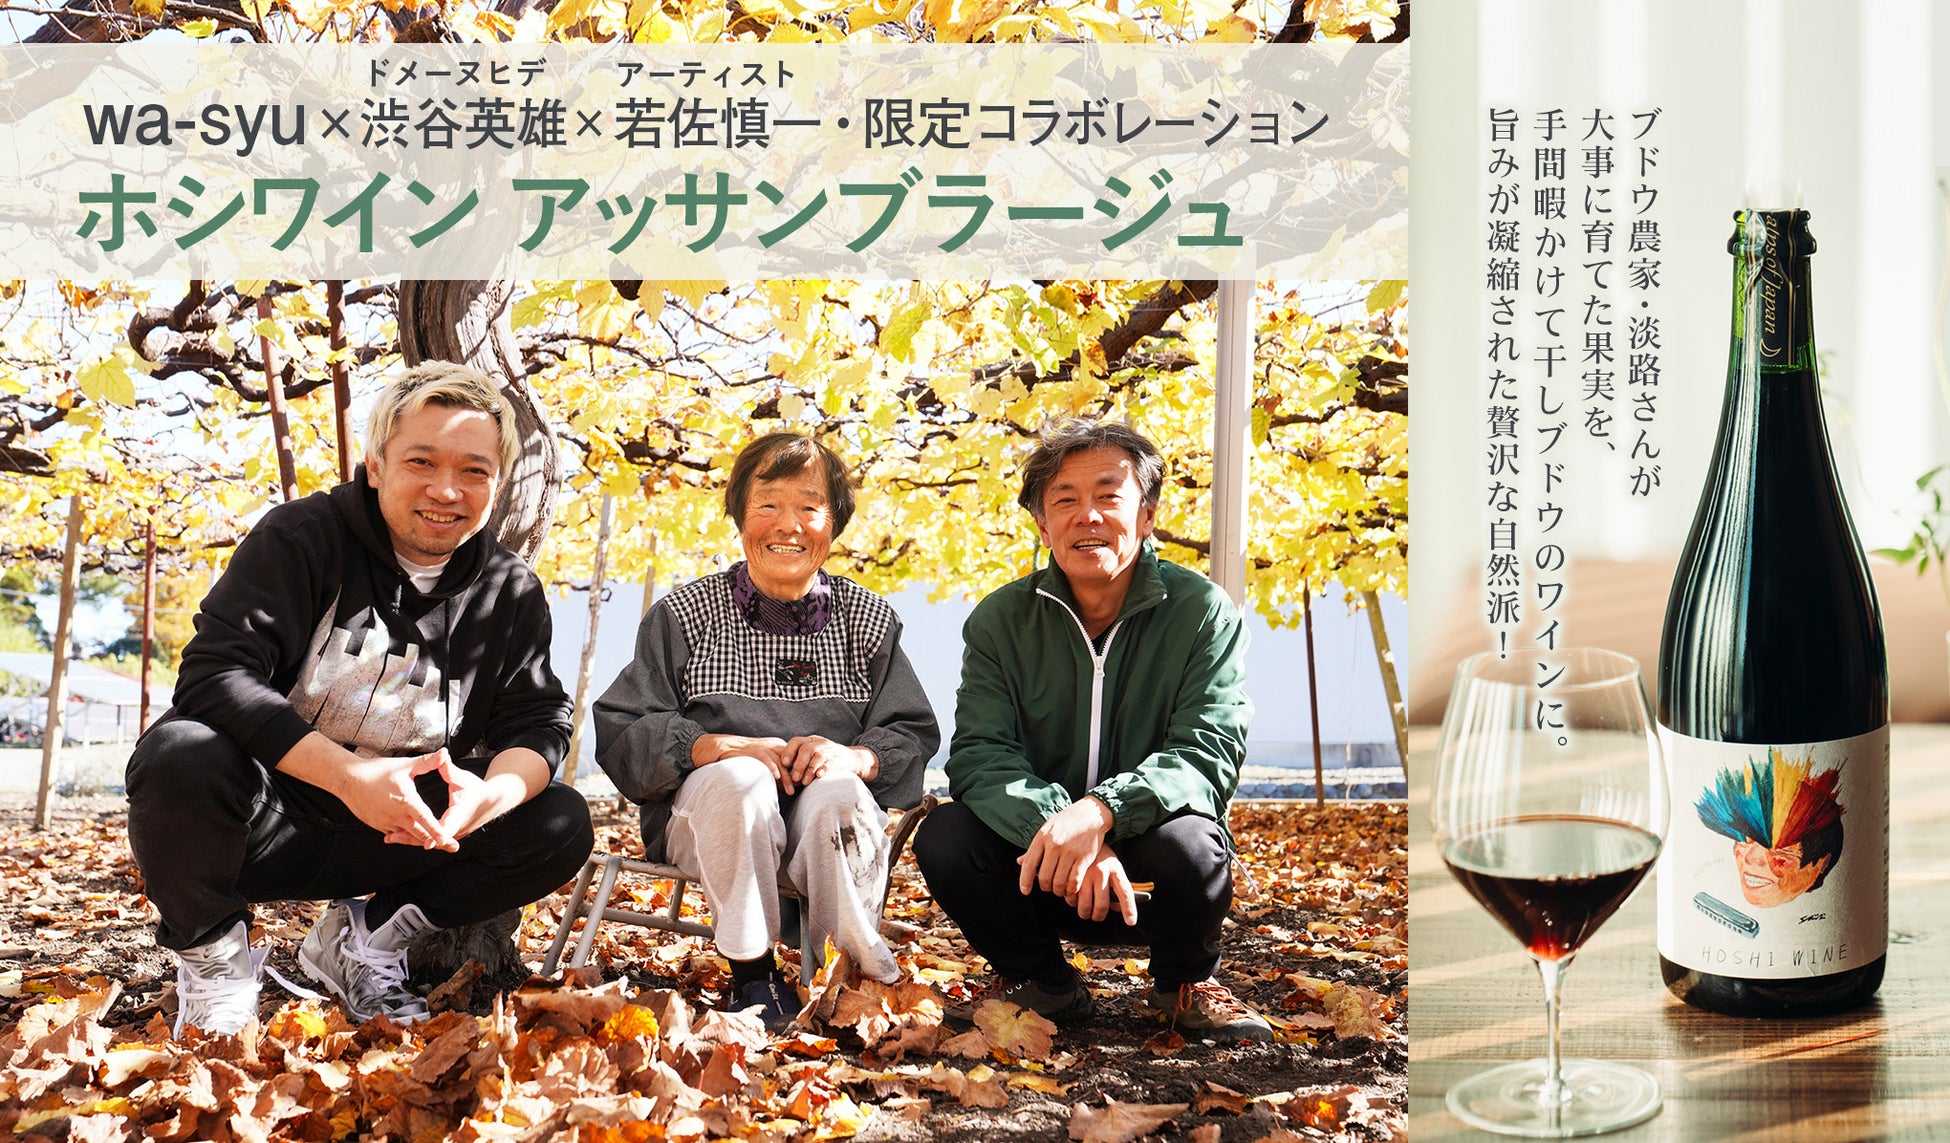 「ドメーヌヒデ」と「wa-syu」のコラボワイン第三弾がリリース！⽇本ワインの新たな幕開けを感じさせる⾚ワイン「ホシワイン アッサンブラージュ」